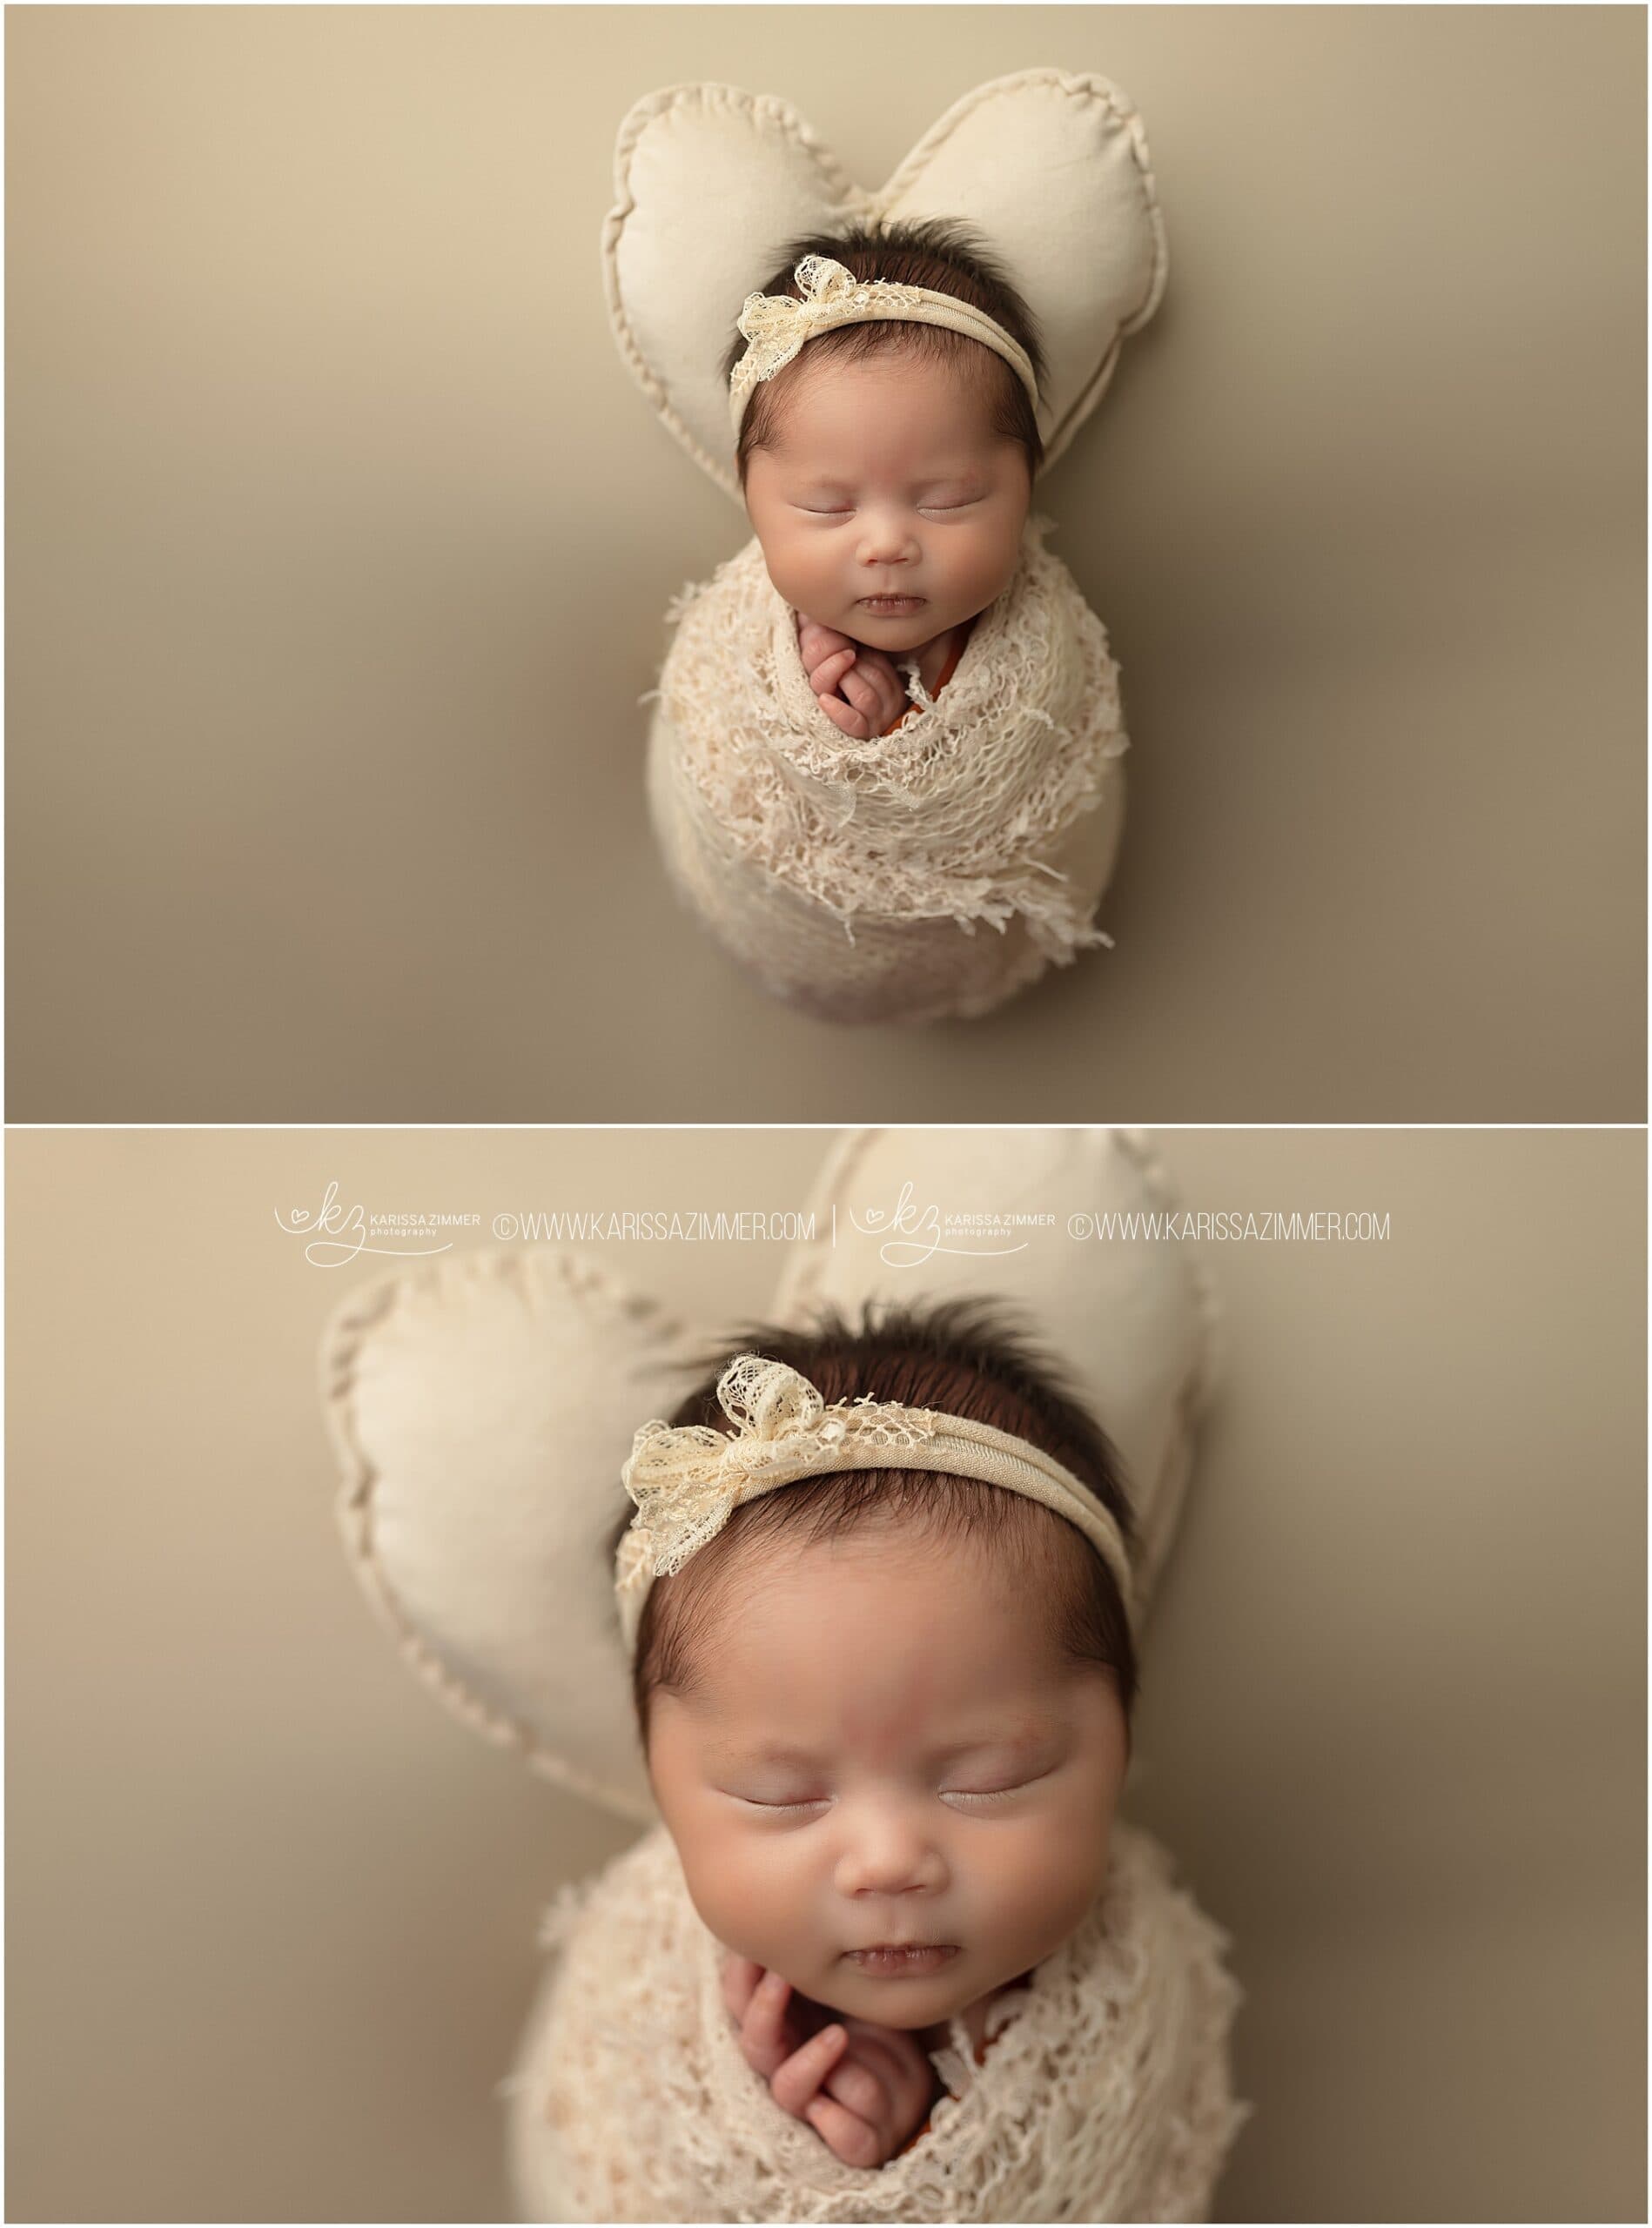 newborn baby photos on cream background